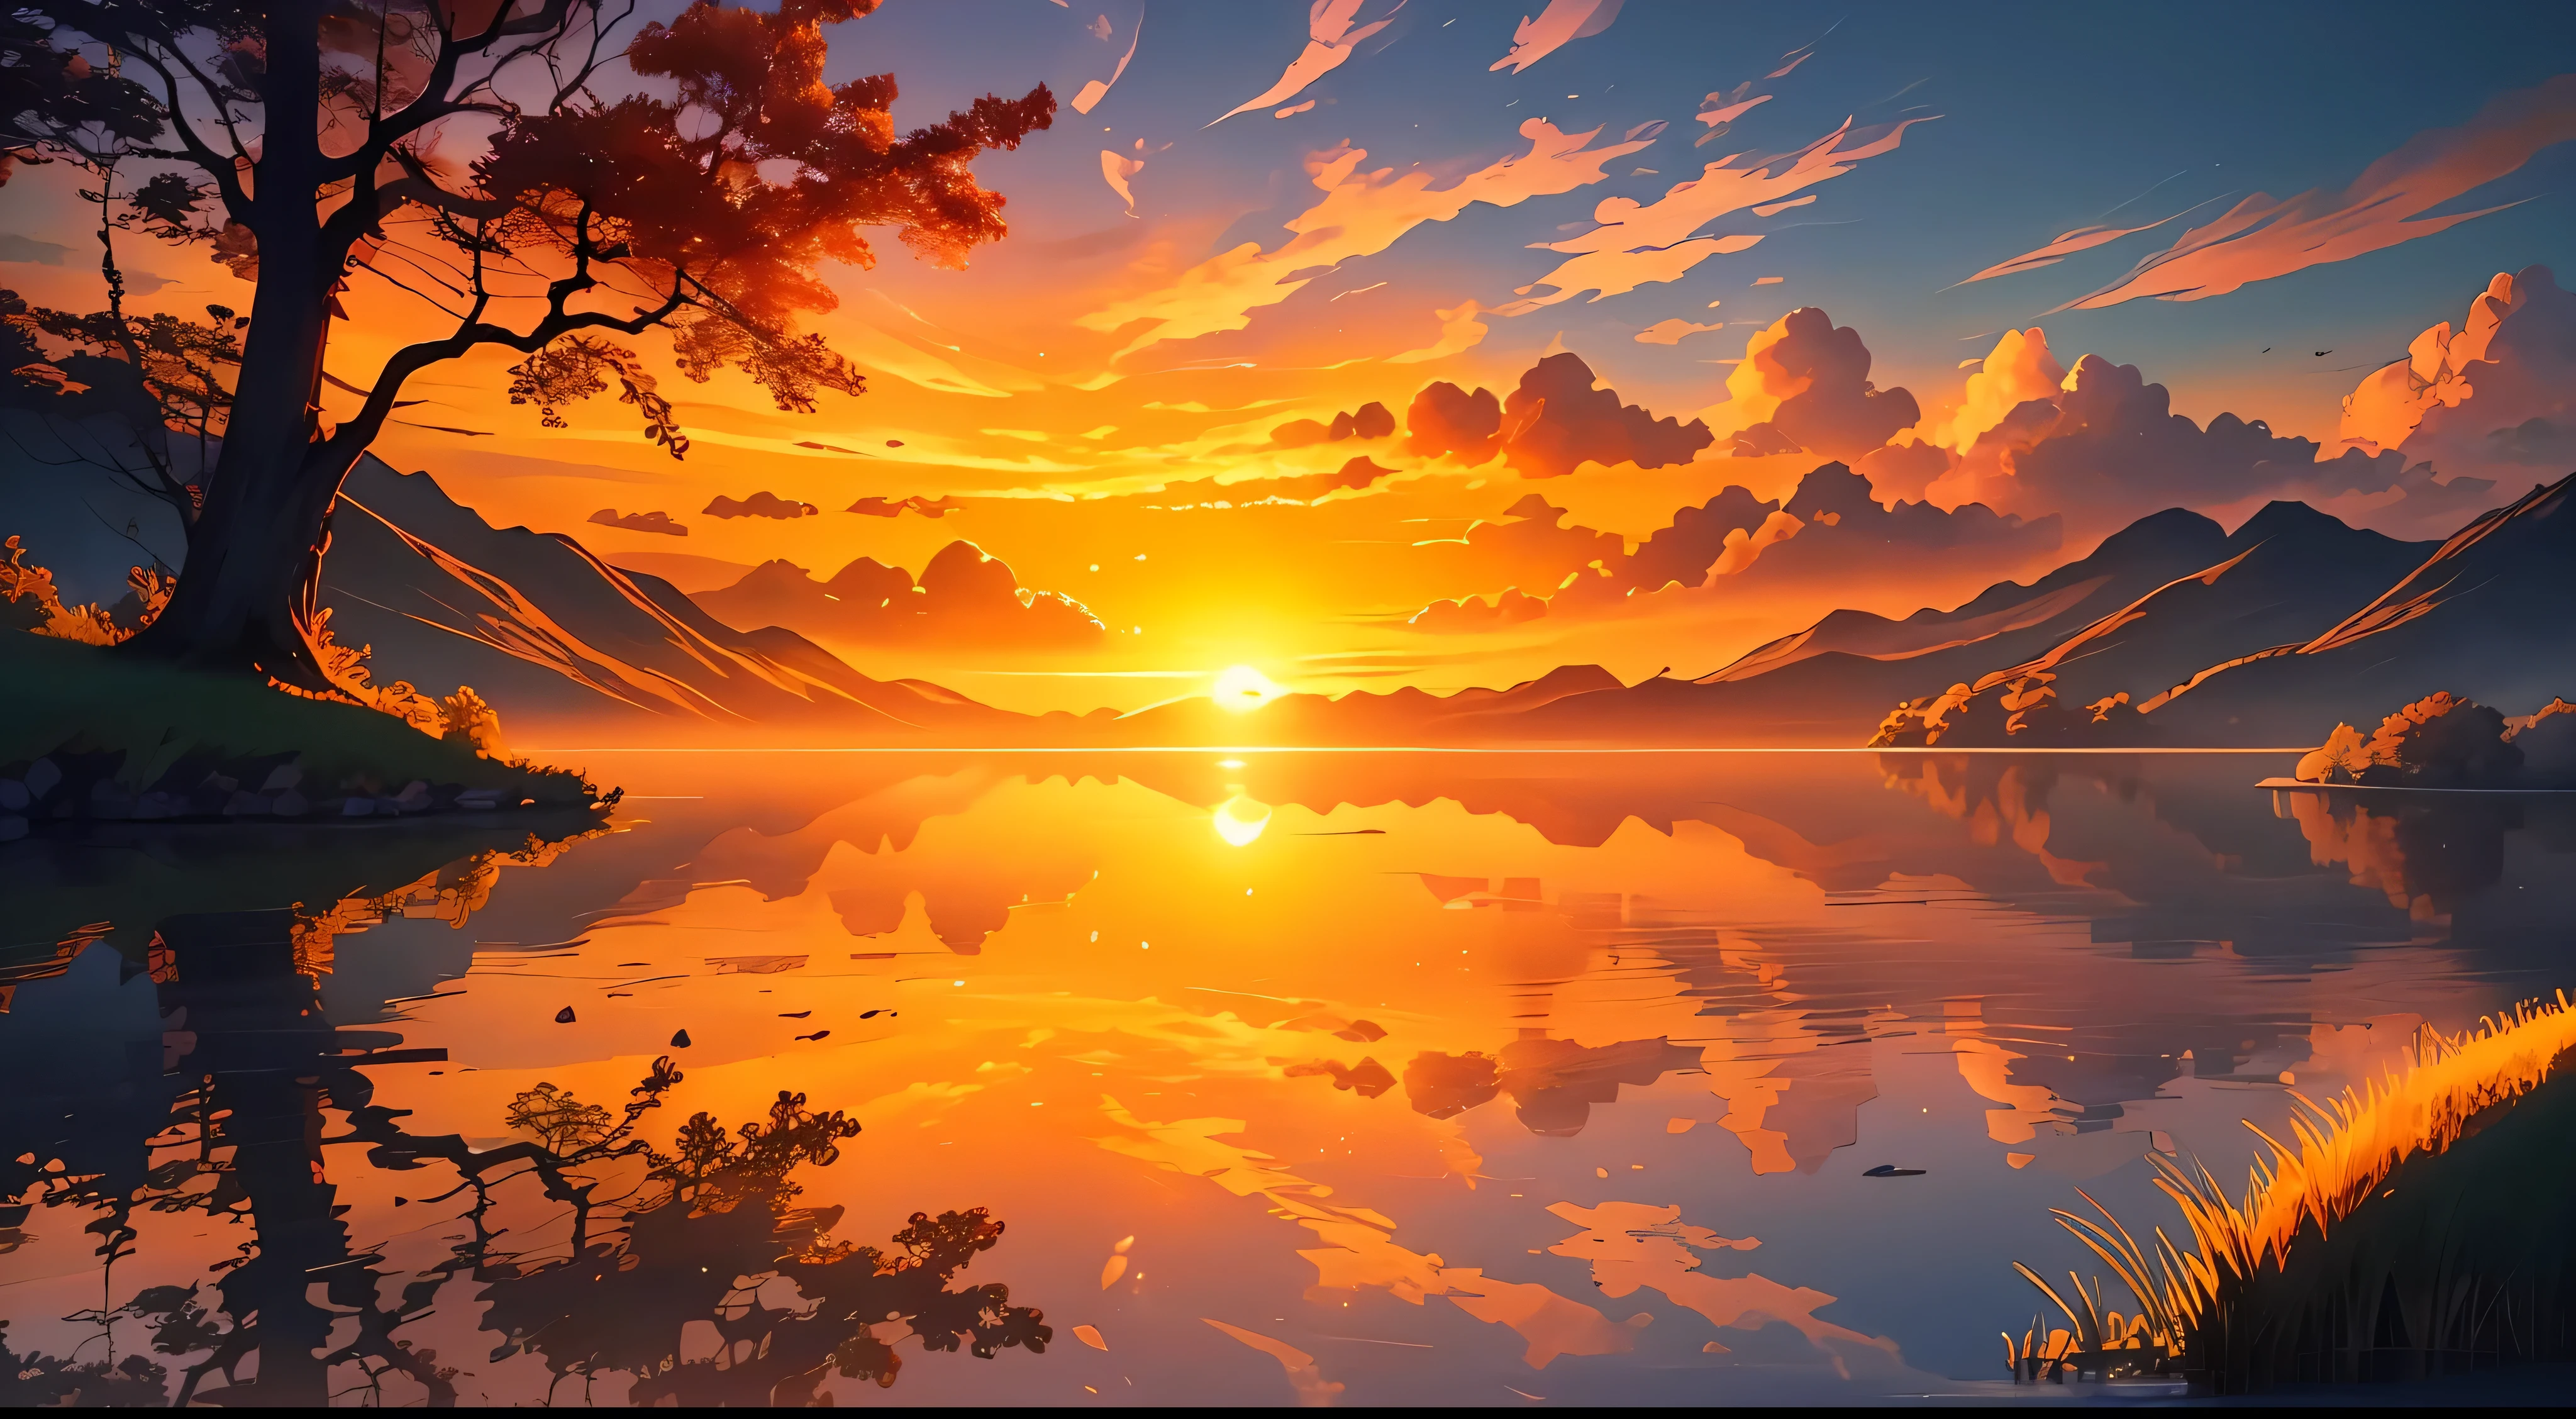 Une image qui représente un lever de soleil radieux sur un paysage tranquille et serein